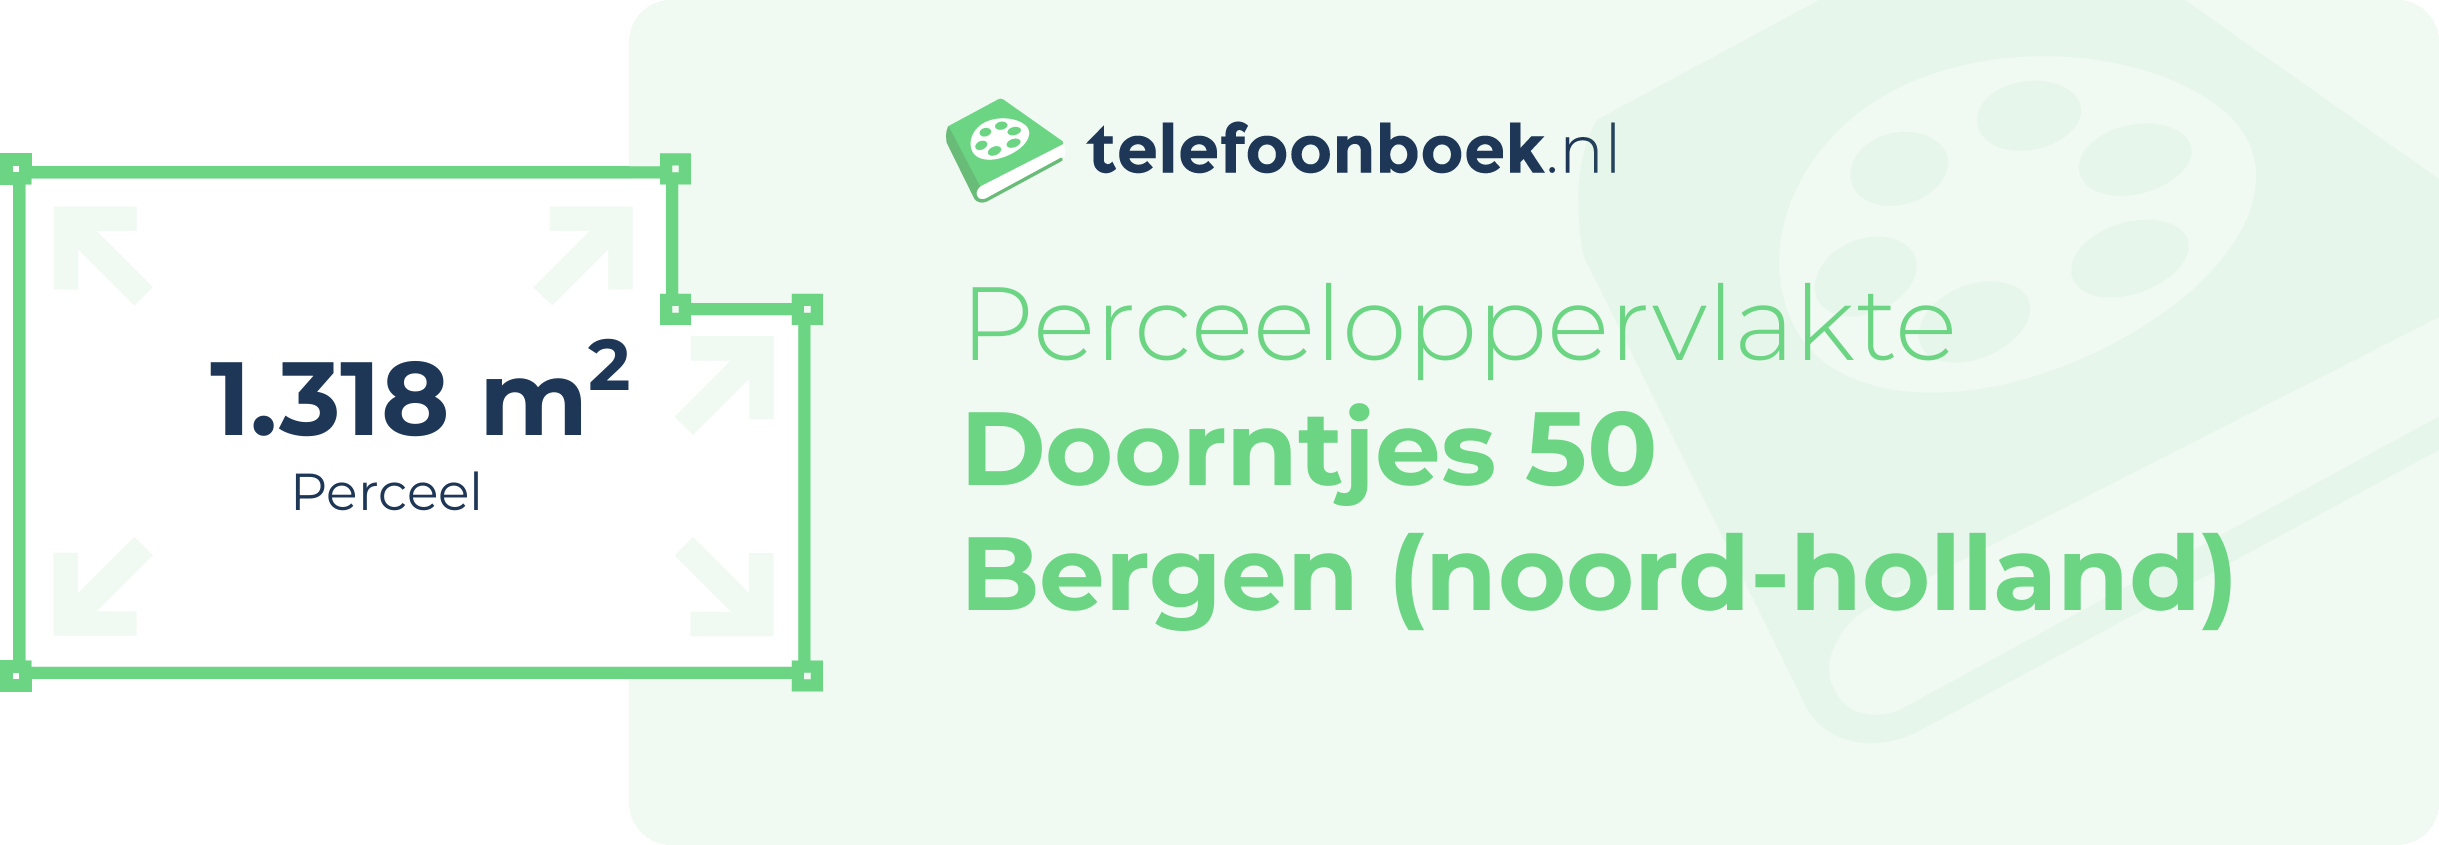 Perceeloppervlakte Doorntjes 50 Bergen (Noord-Holland)